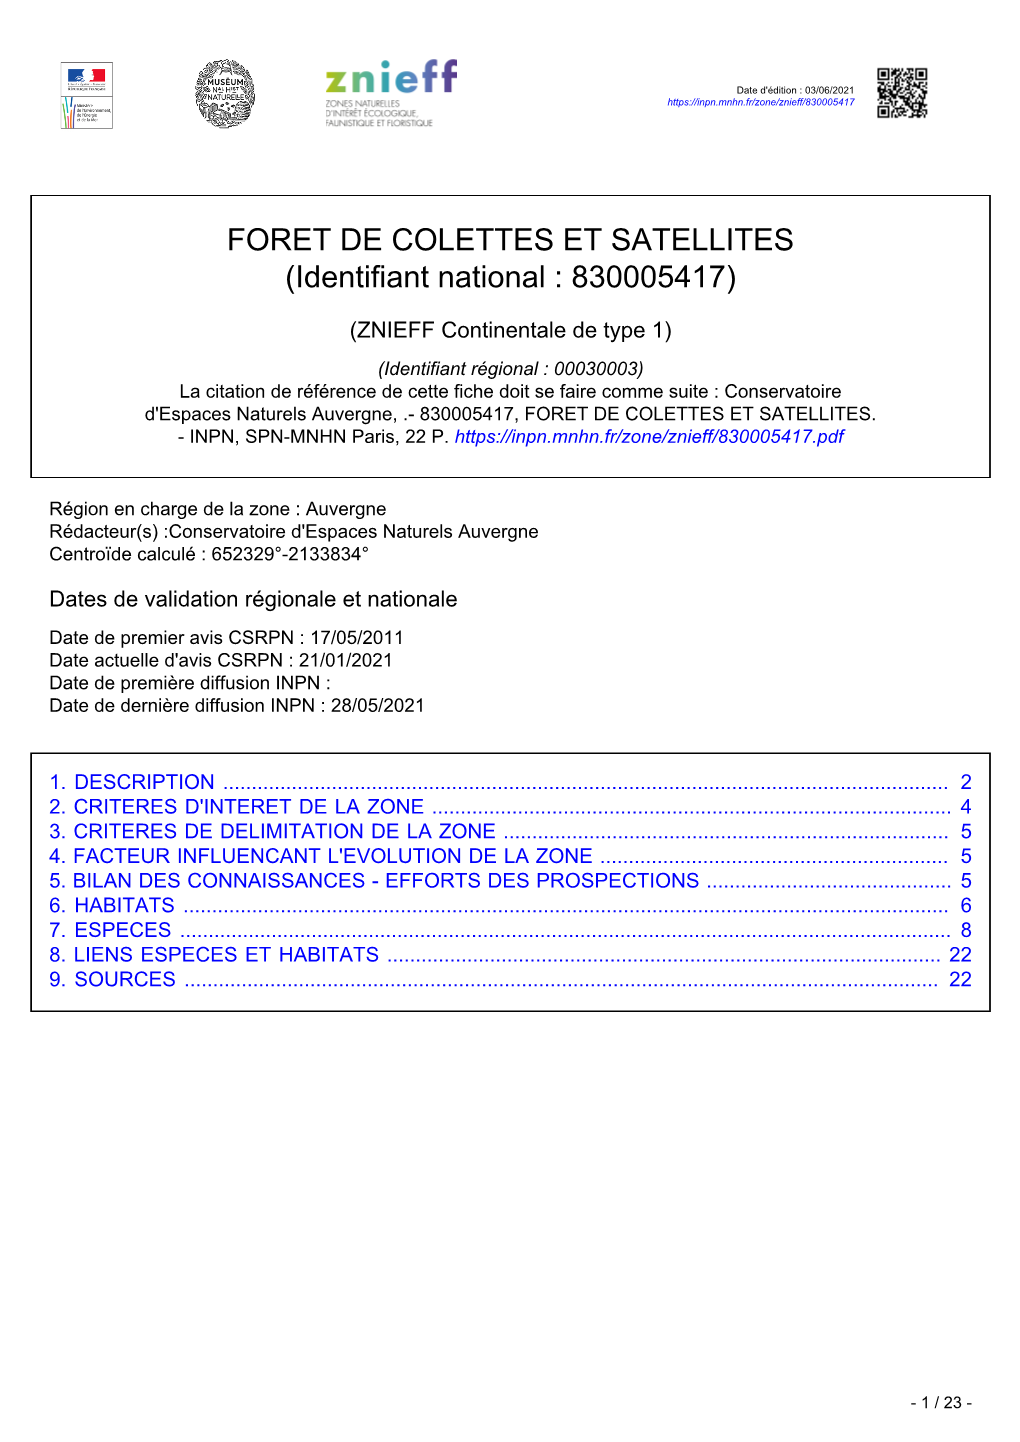 FORET DE COLETTES ET SATELLITES (Identifiant National : 830005417)